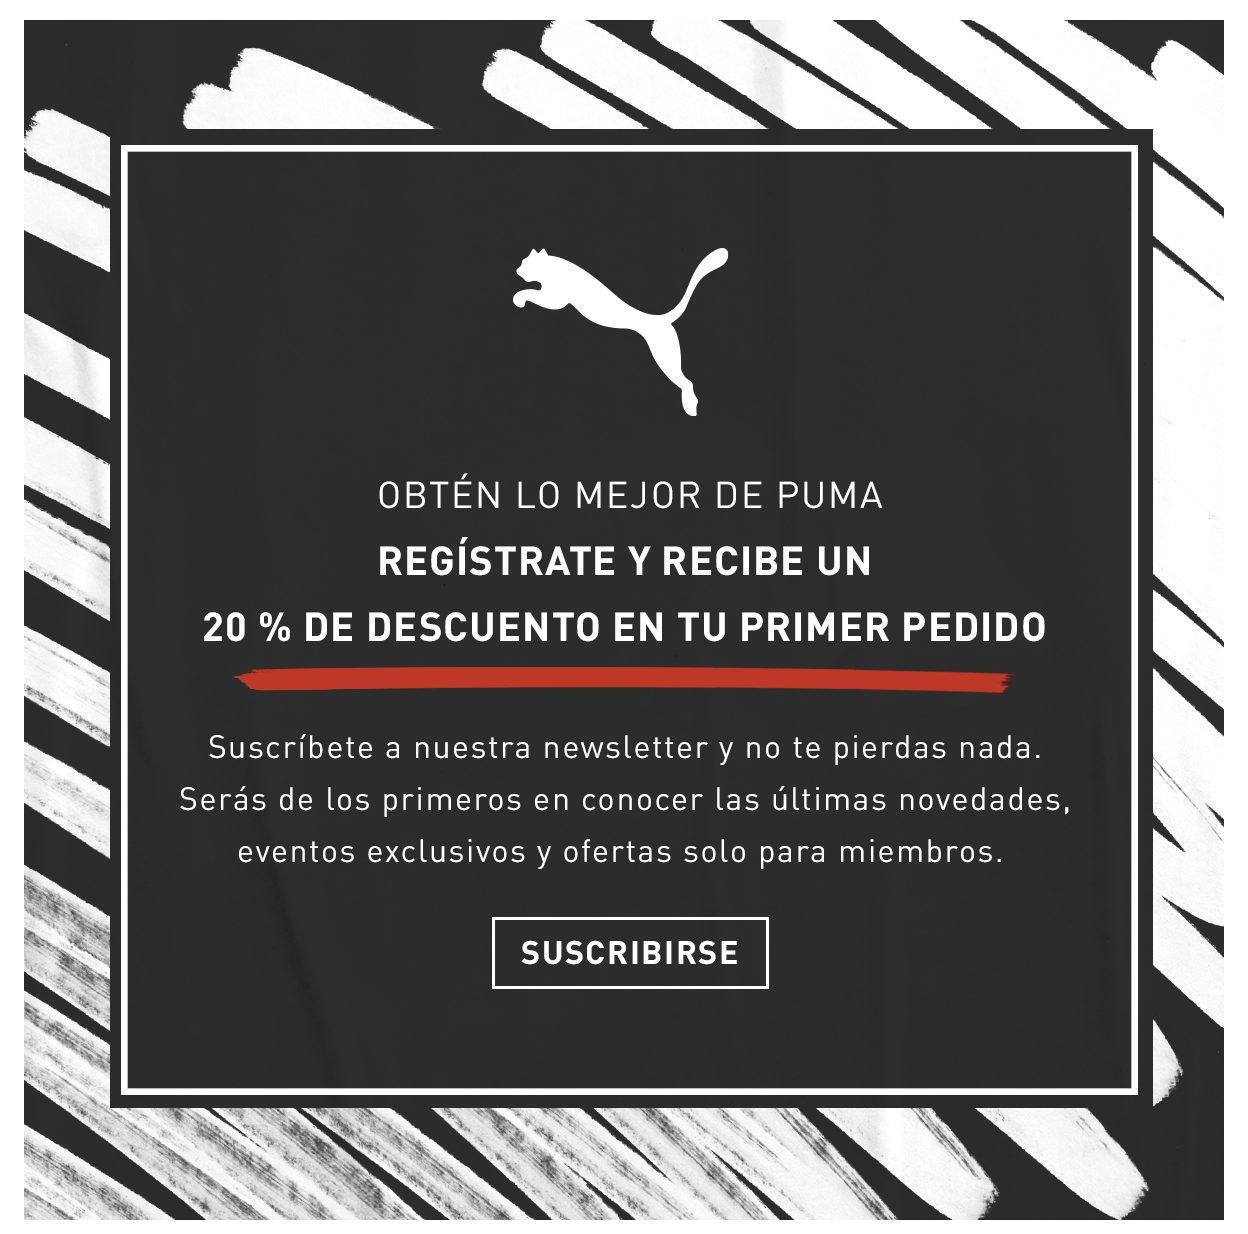 Ejemplo de captación de leads de Puma